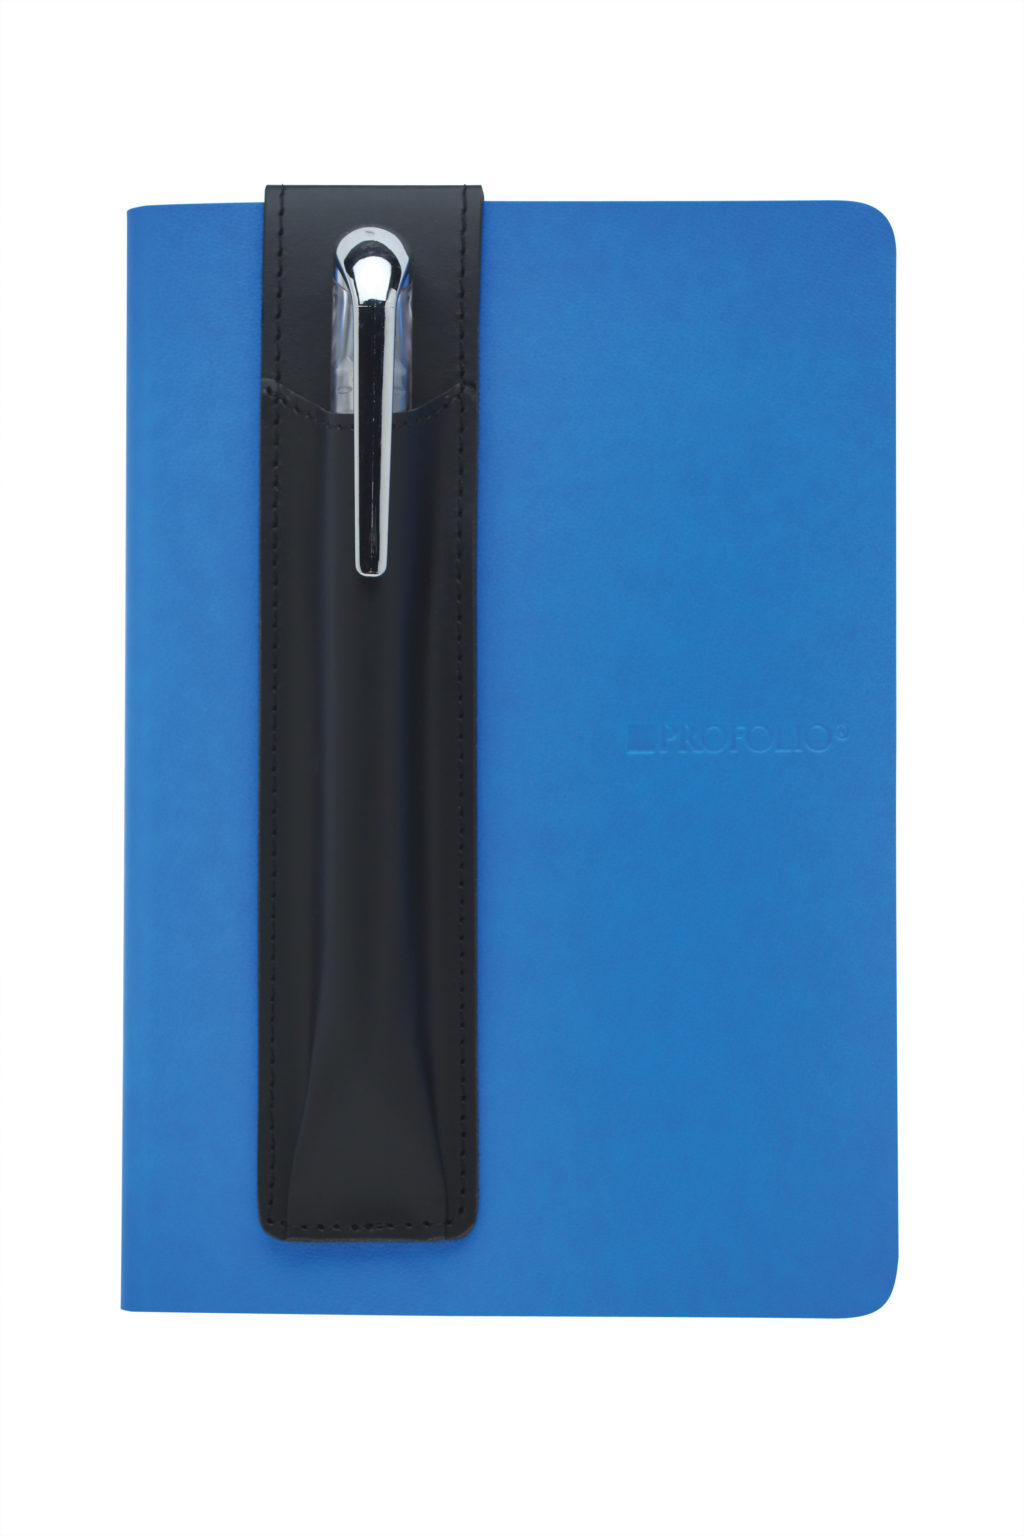 Itoya Journal Sidekick Magnetic Pen Holder - Brown